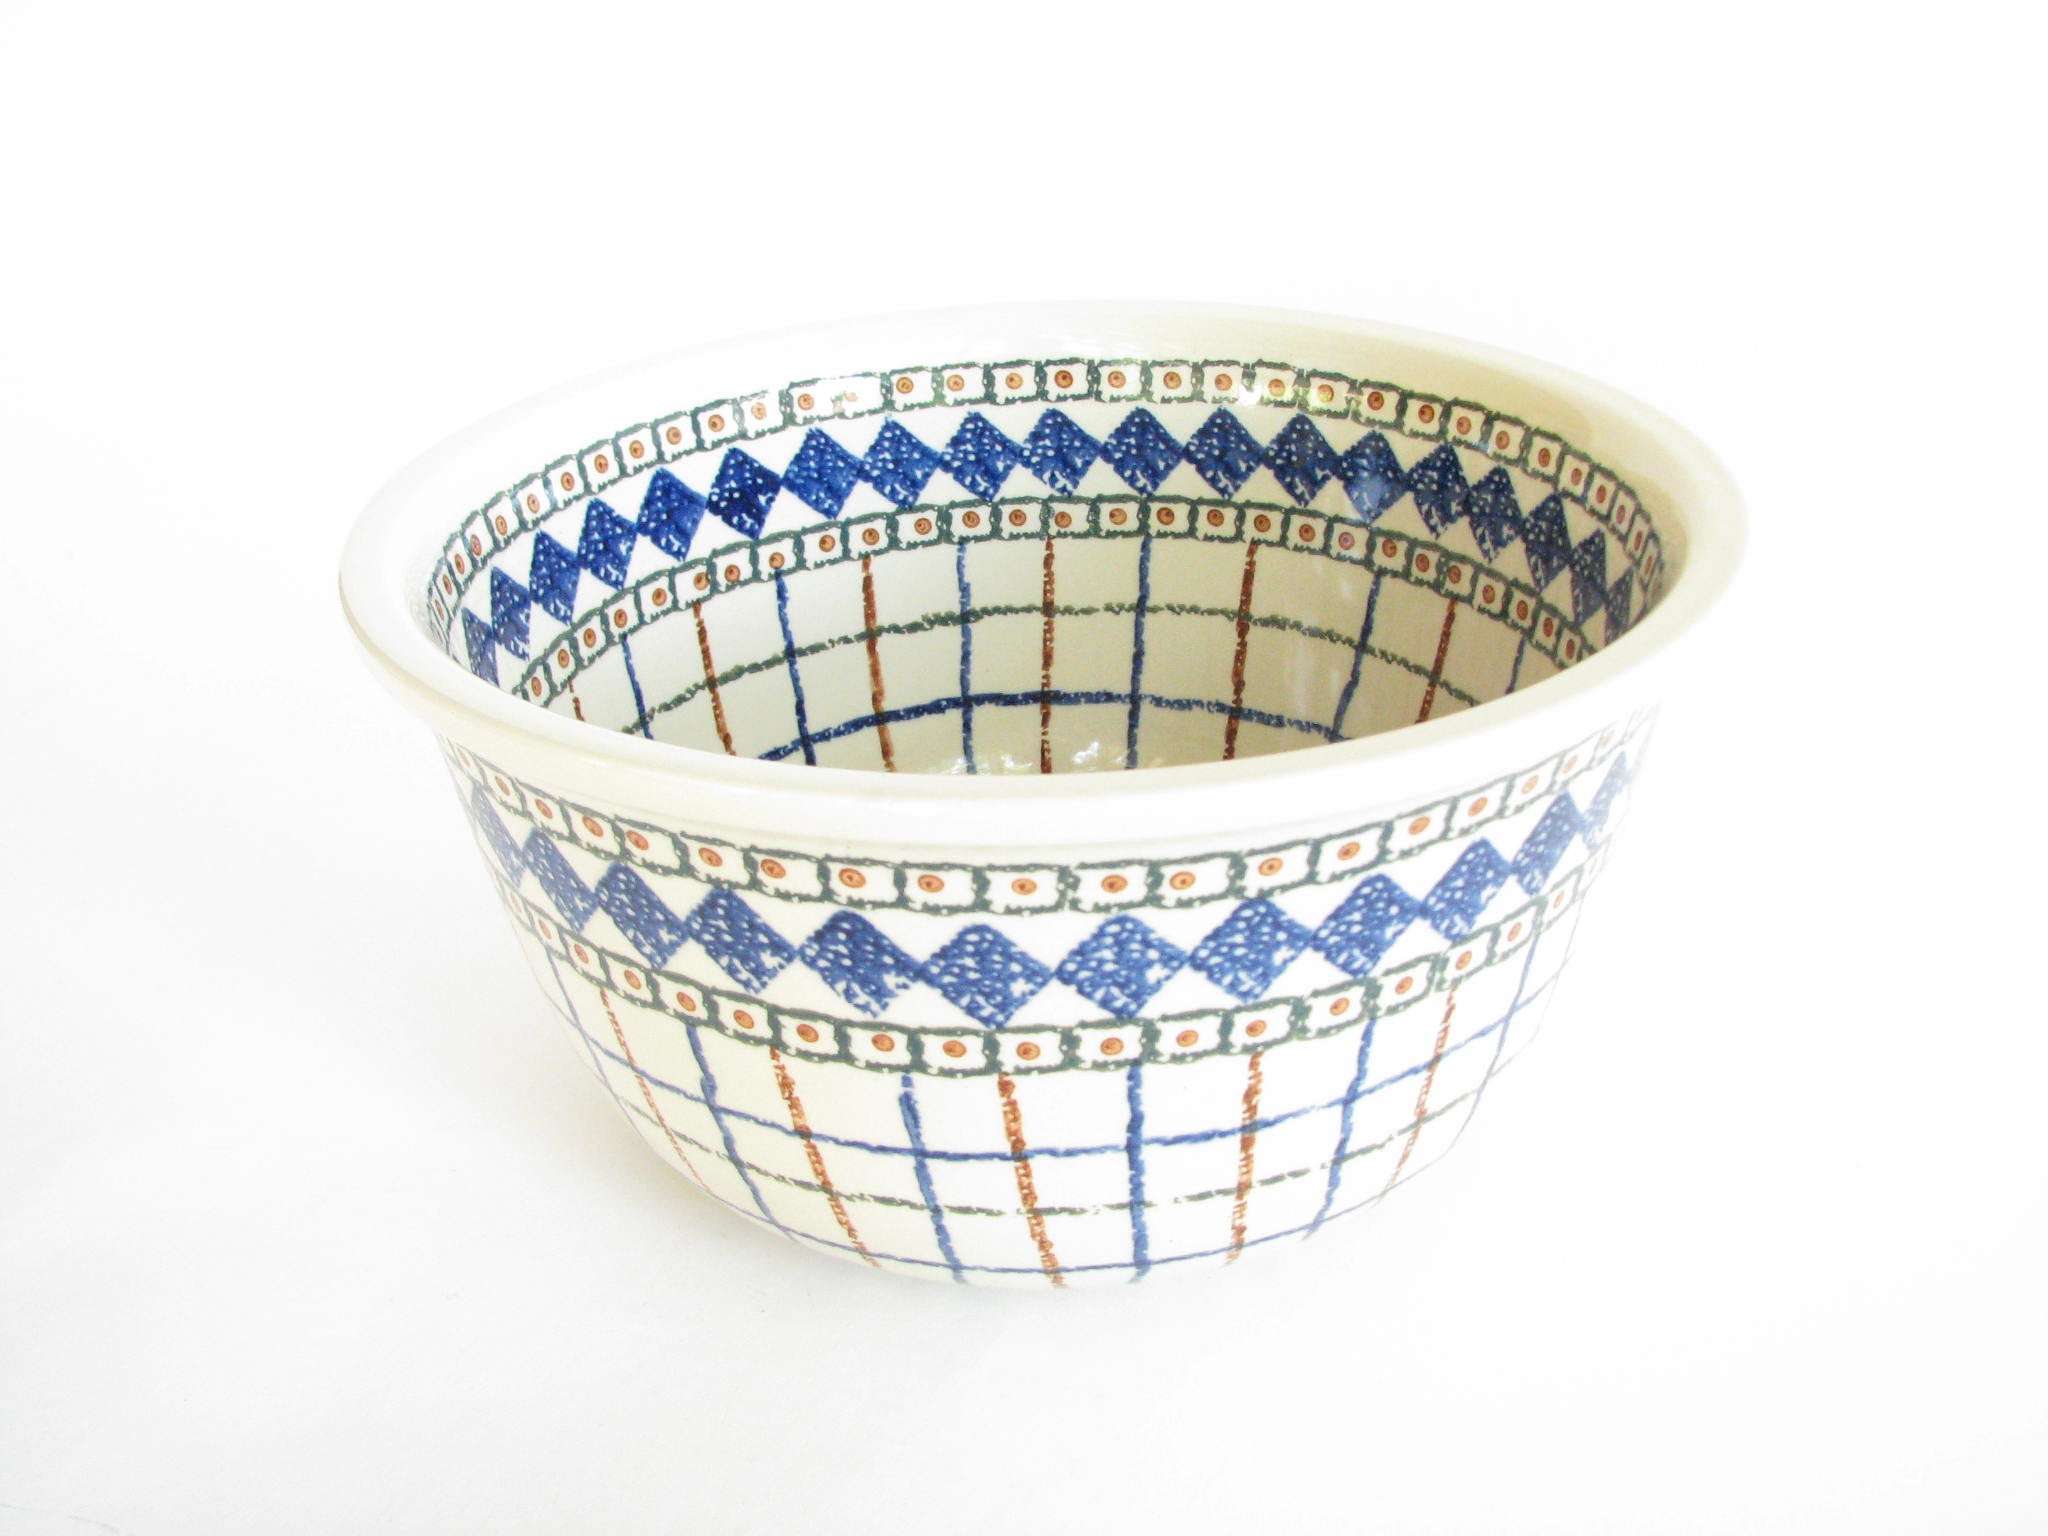 edgebrookhouse - Ceramika Artystyczna Boleslawiec Polish Pottery Large Mixing Serving Bowl with Geometric Pattern